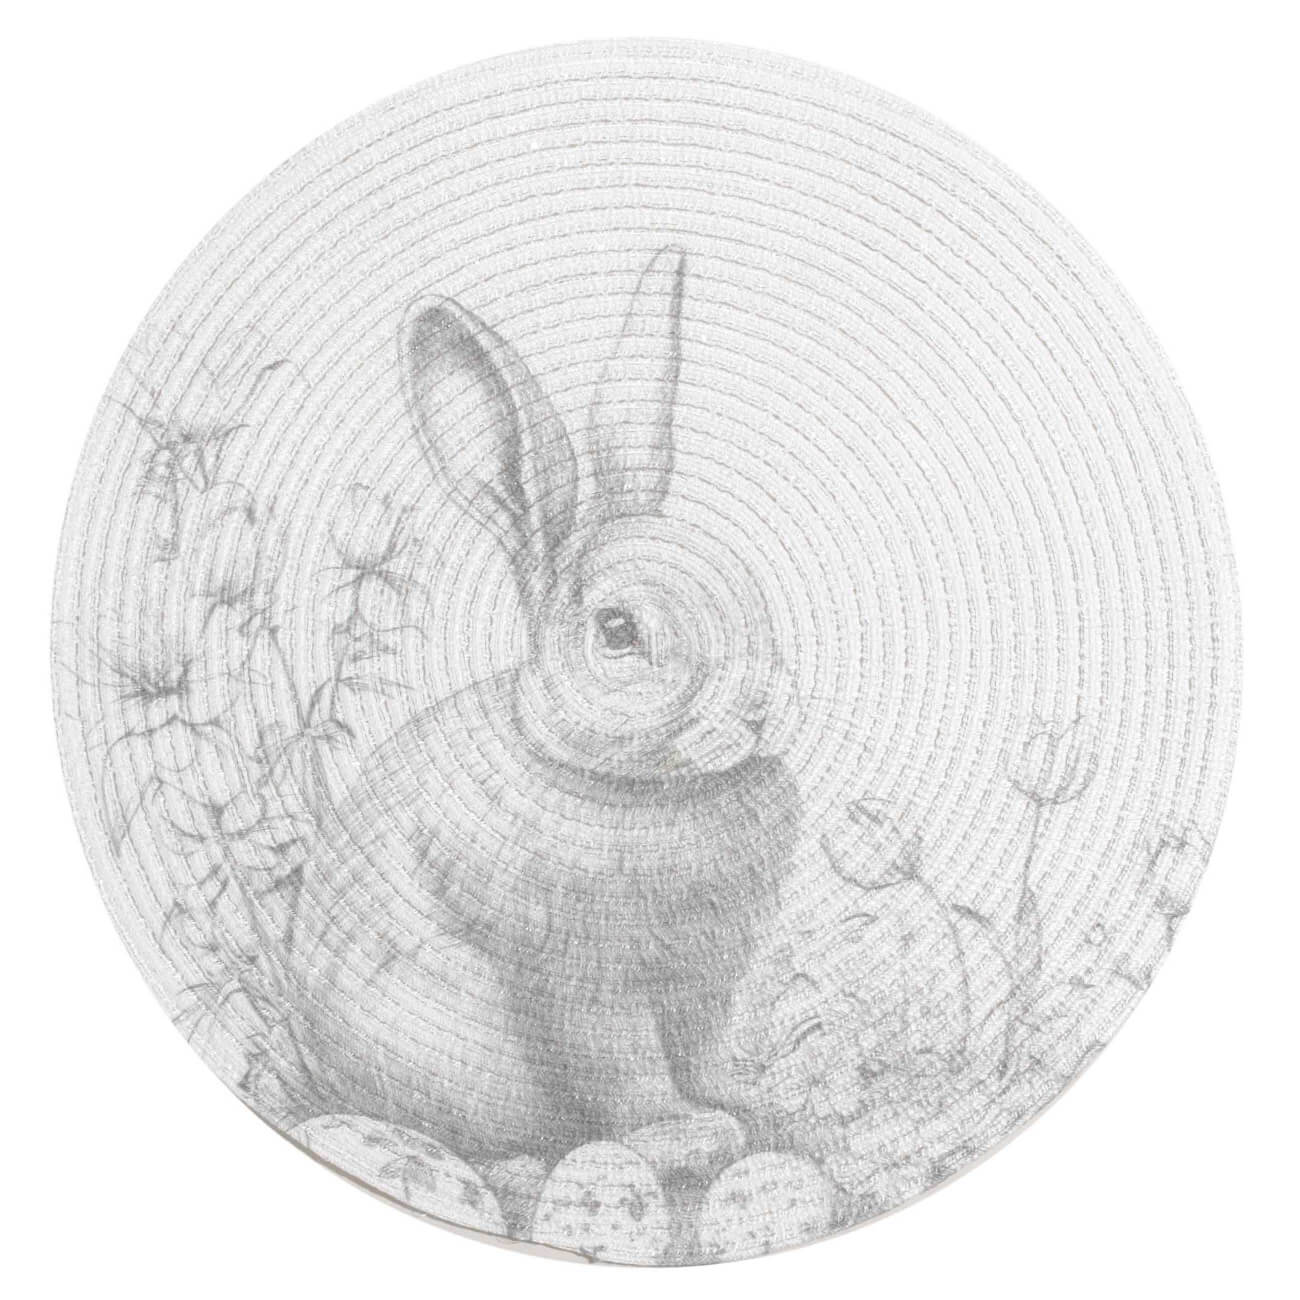 Салфетка под приборы, 38 см, полиэстер, круглая, белая, Графичный кролик, Rotary print салфетка белая 33х33 20 листов с тиснением